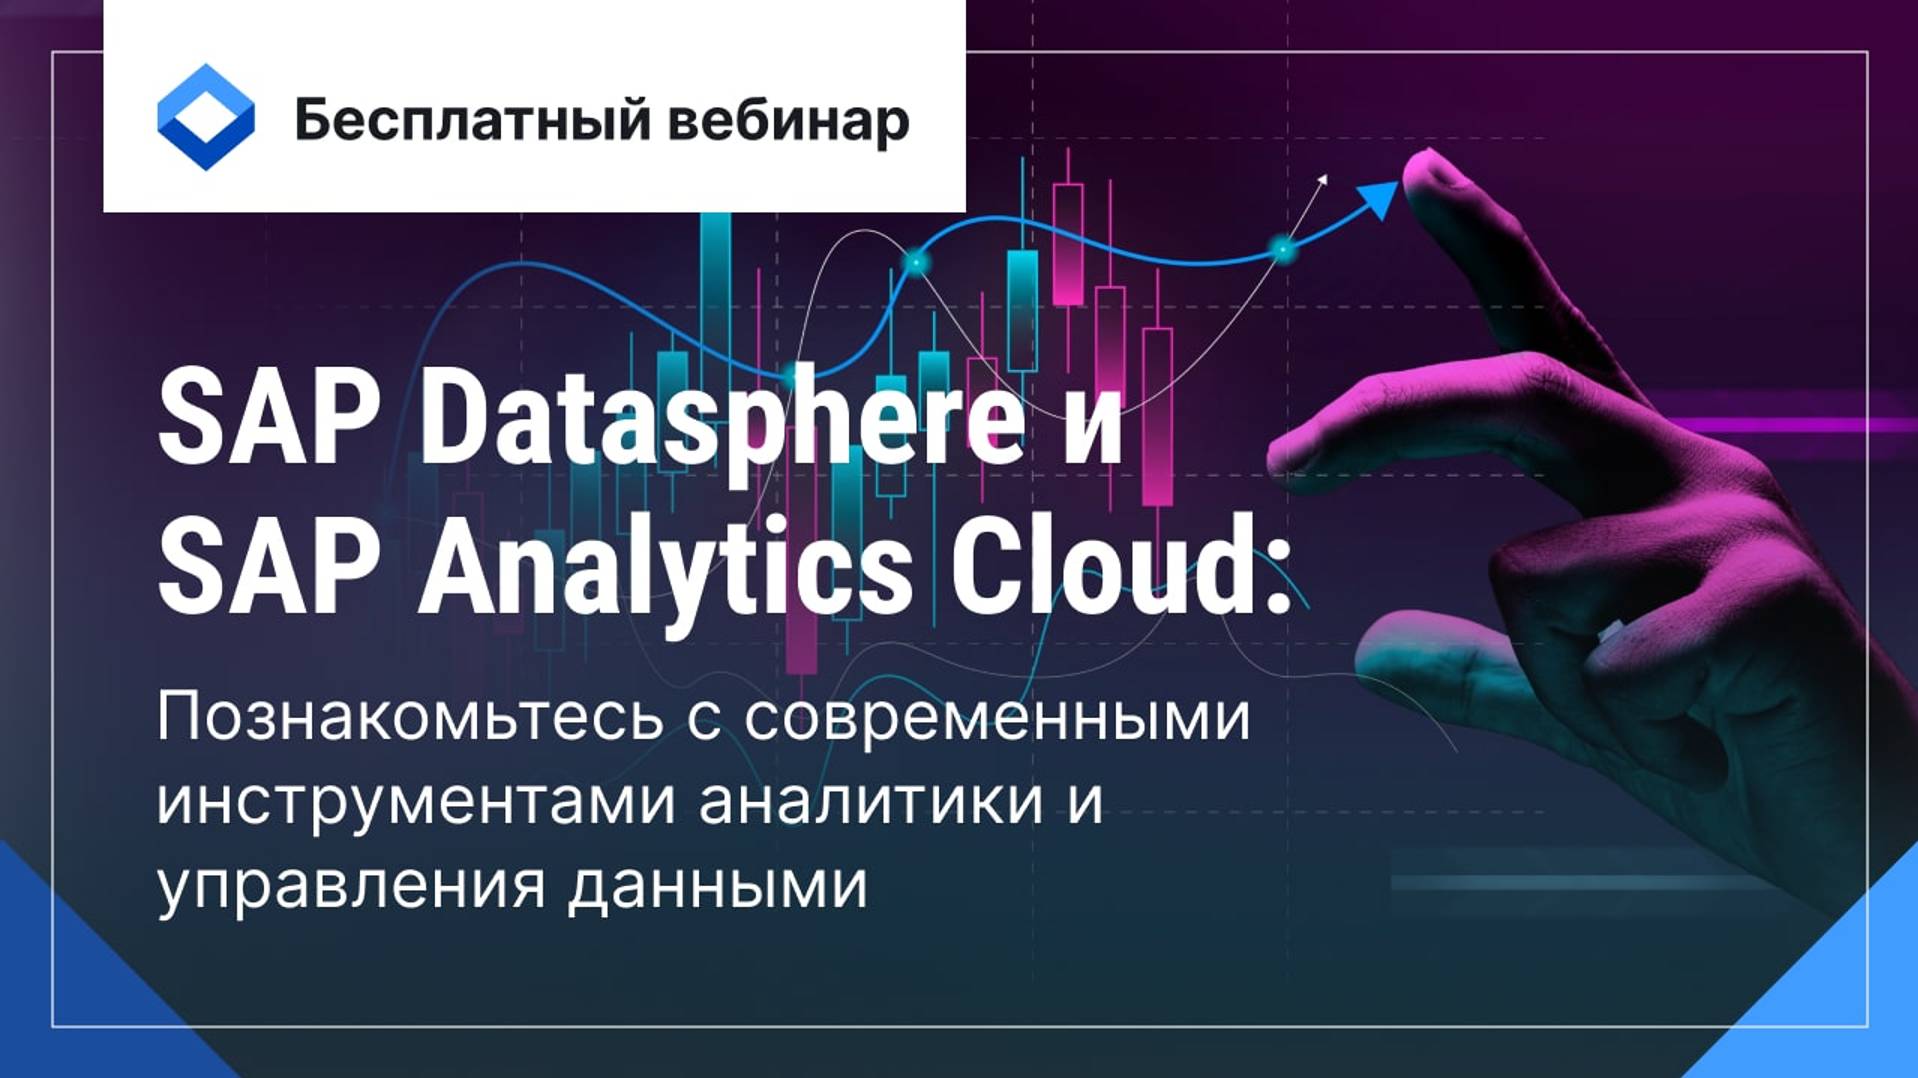 Современные инструменты аналитики и управления данными — SAP Datasphere и SAP Analytics Cloud